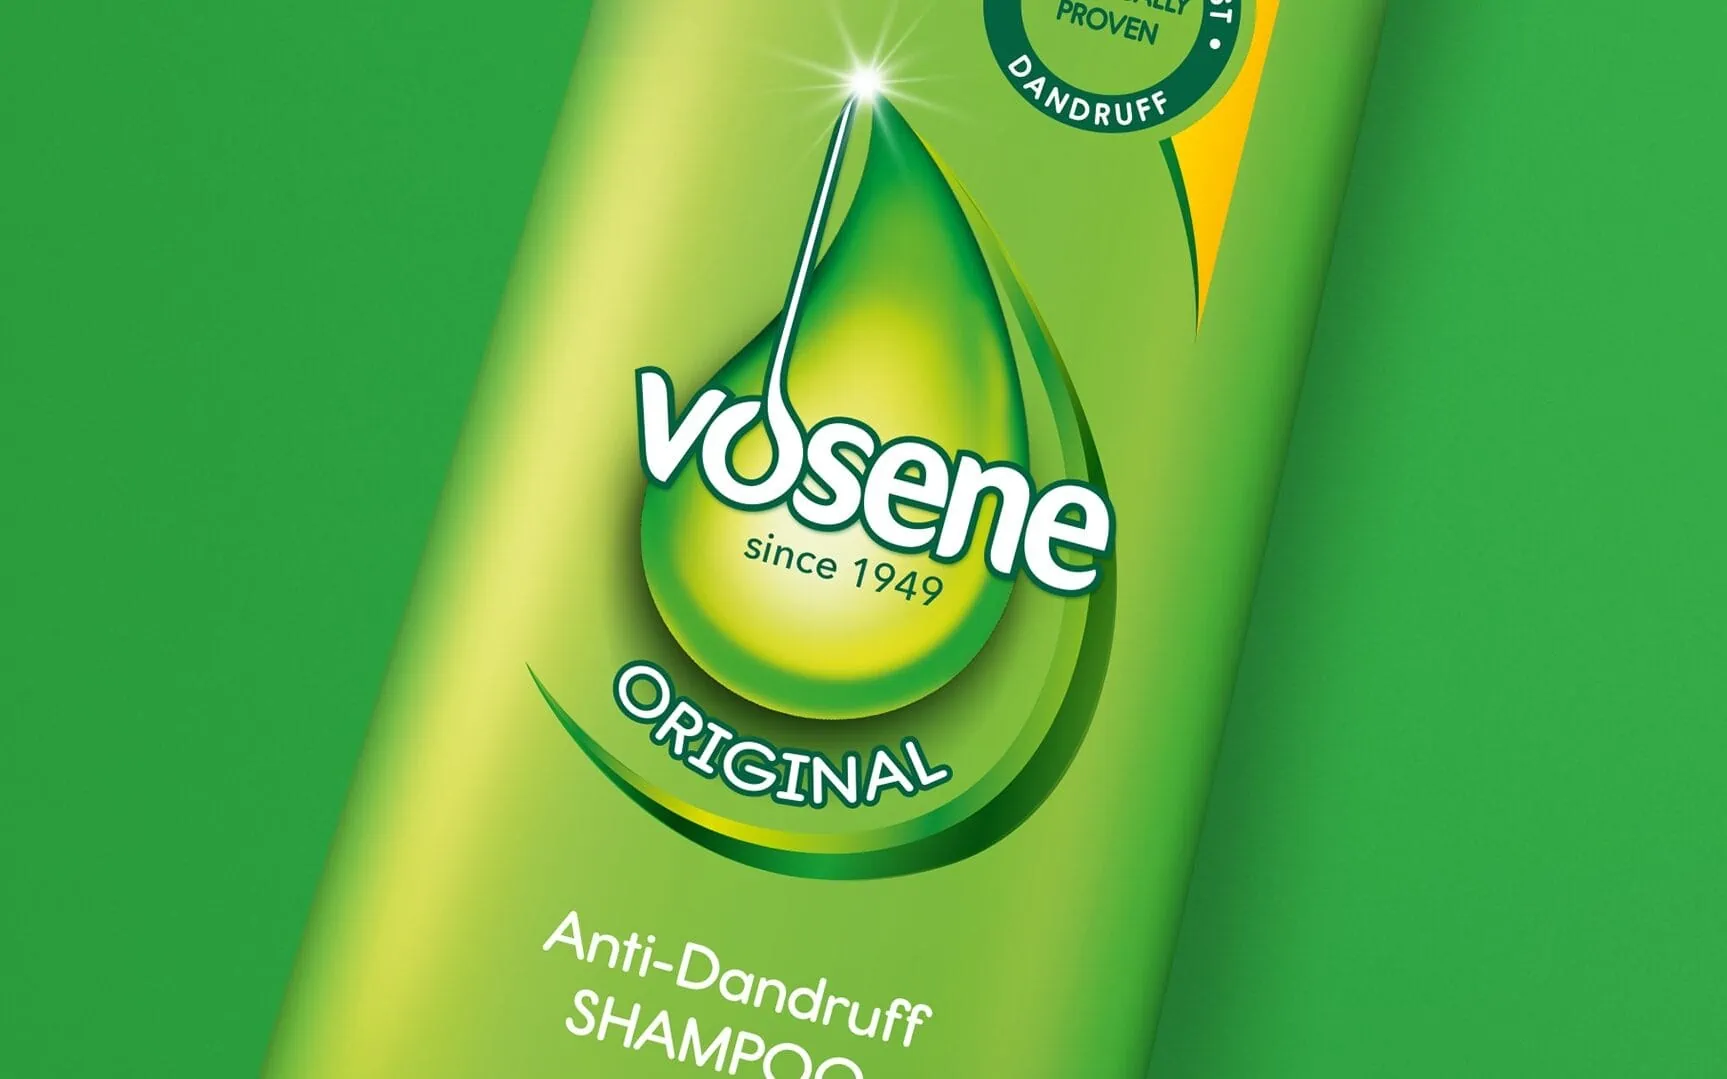 vosene shampoo branding and packaging design